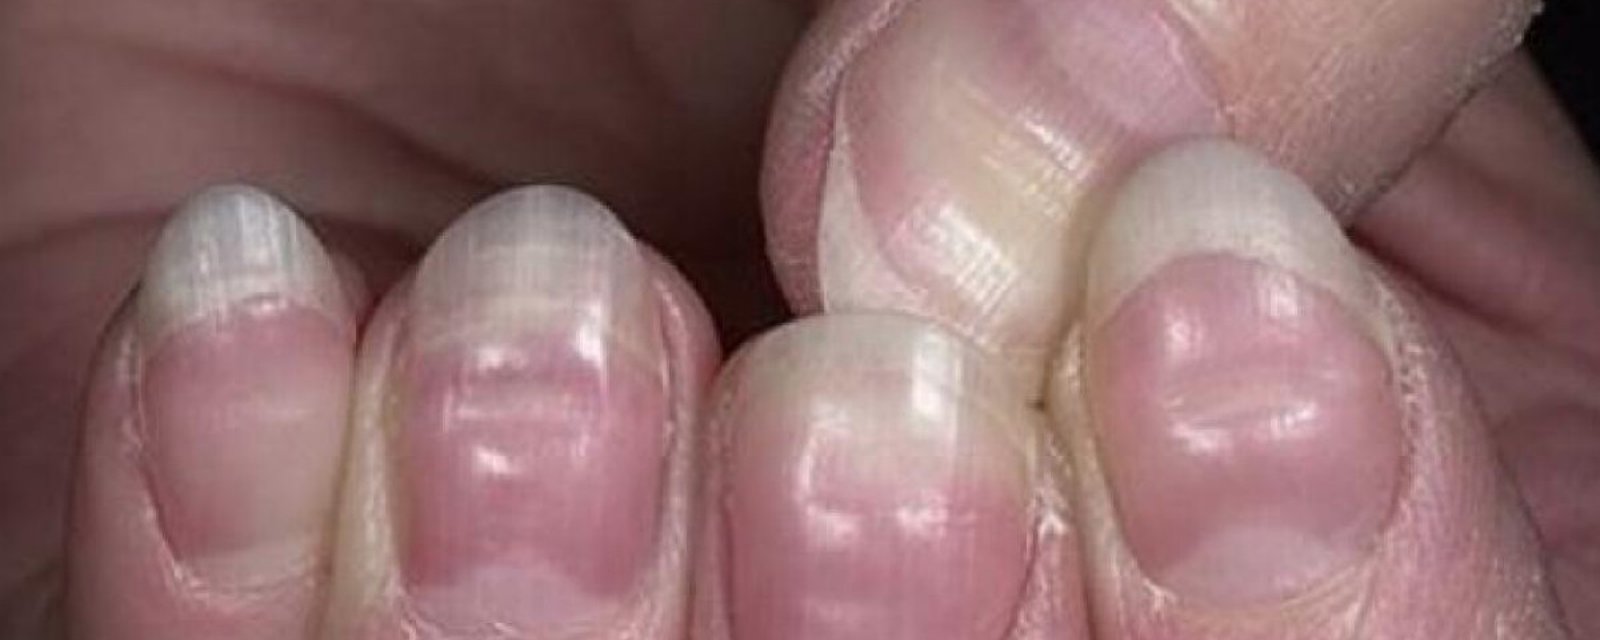 Si vous remarquez ça sur vos ongles, vous devriez consulter un médecin!